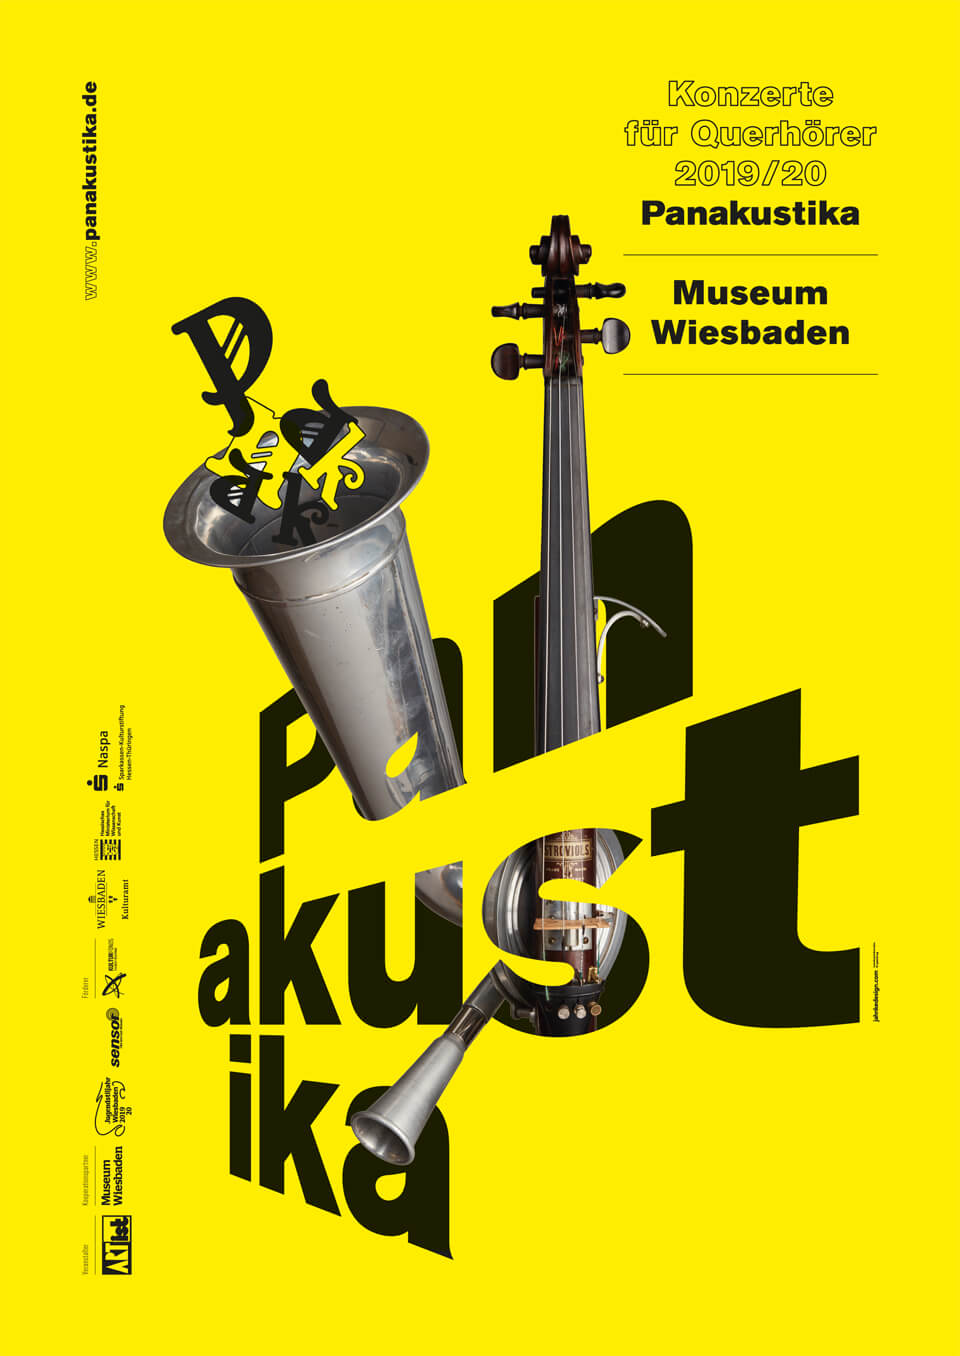 plakat/poster jahnkedesign lutz jahnke panakustika museum wiesbaden 2019